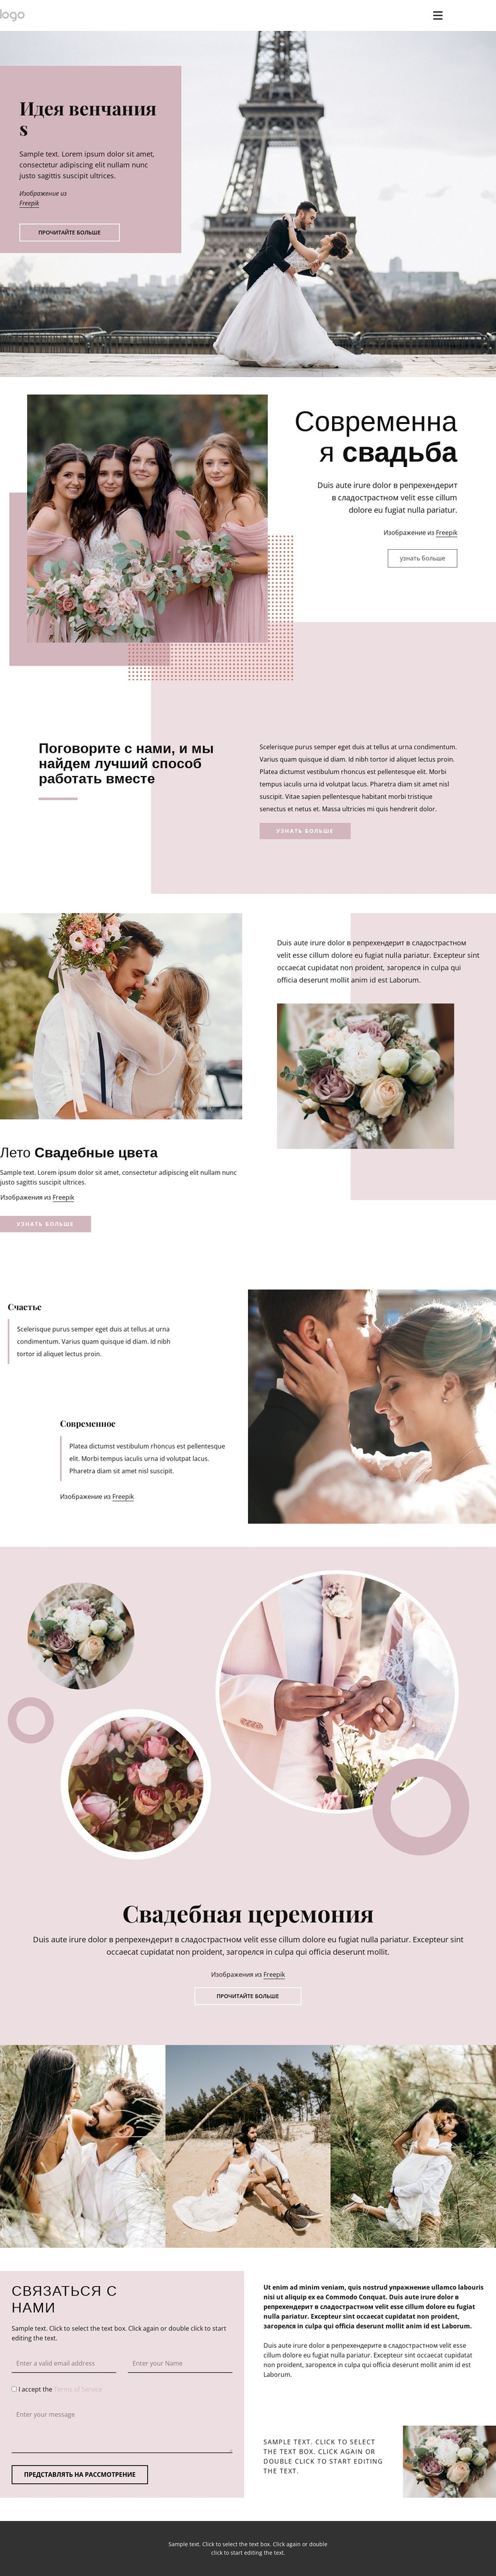 Уникальная свадебная церемония Шаблон веб-сайта